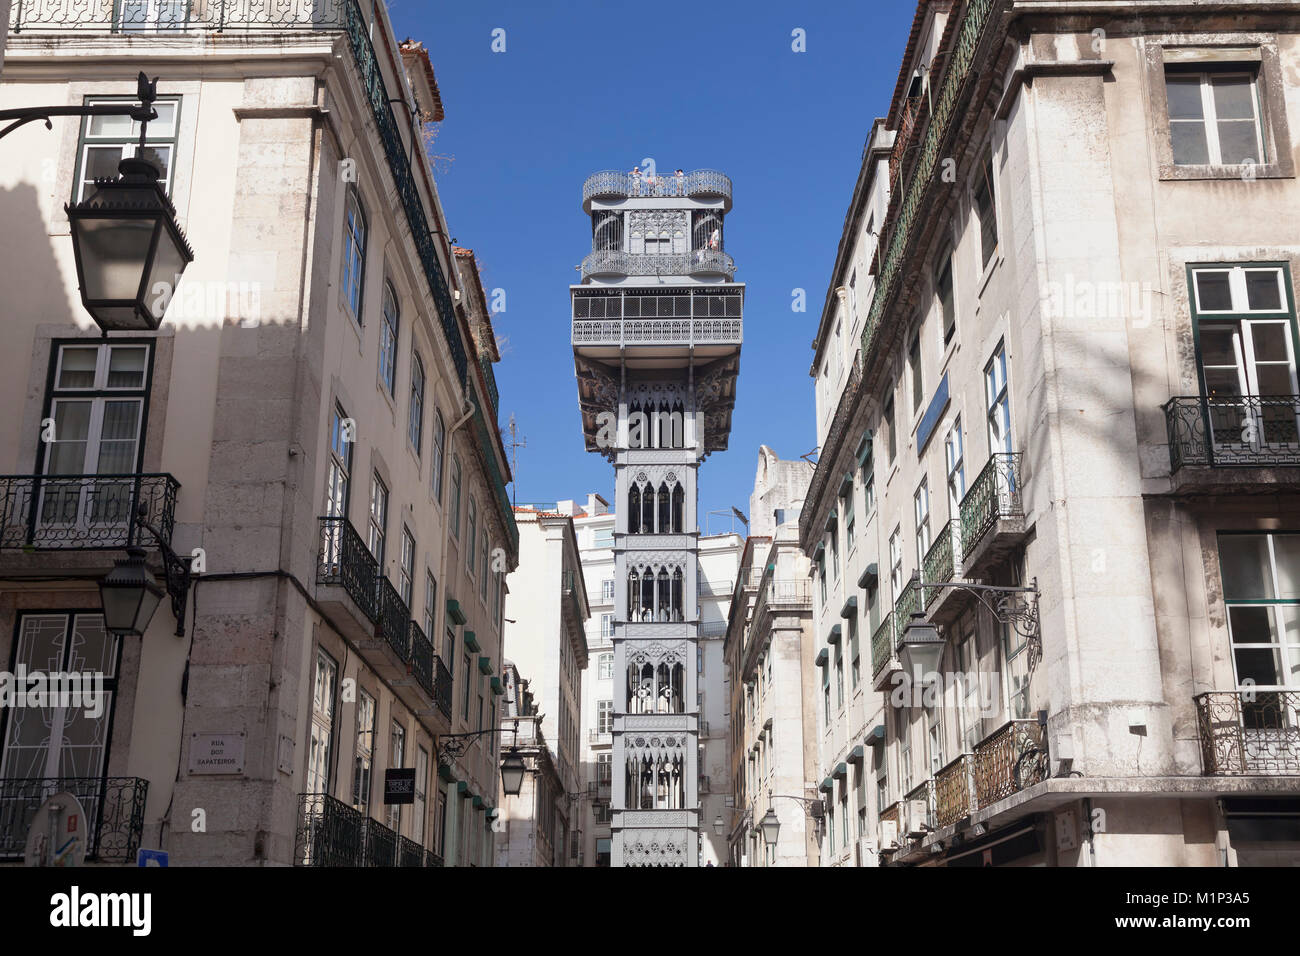 Elevador de Santa Justa, ascenseur de Santa Justa, Baixa, Lisbonne, Portugal, Europe Banque D'Images